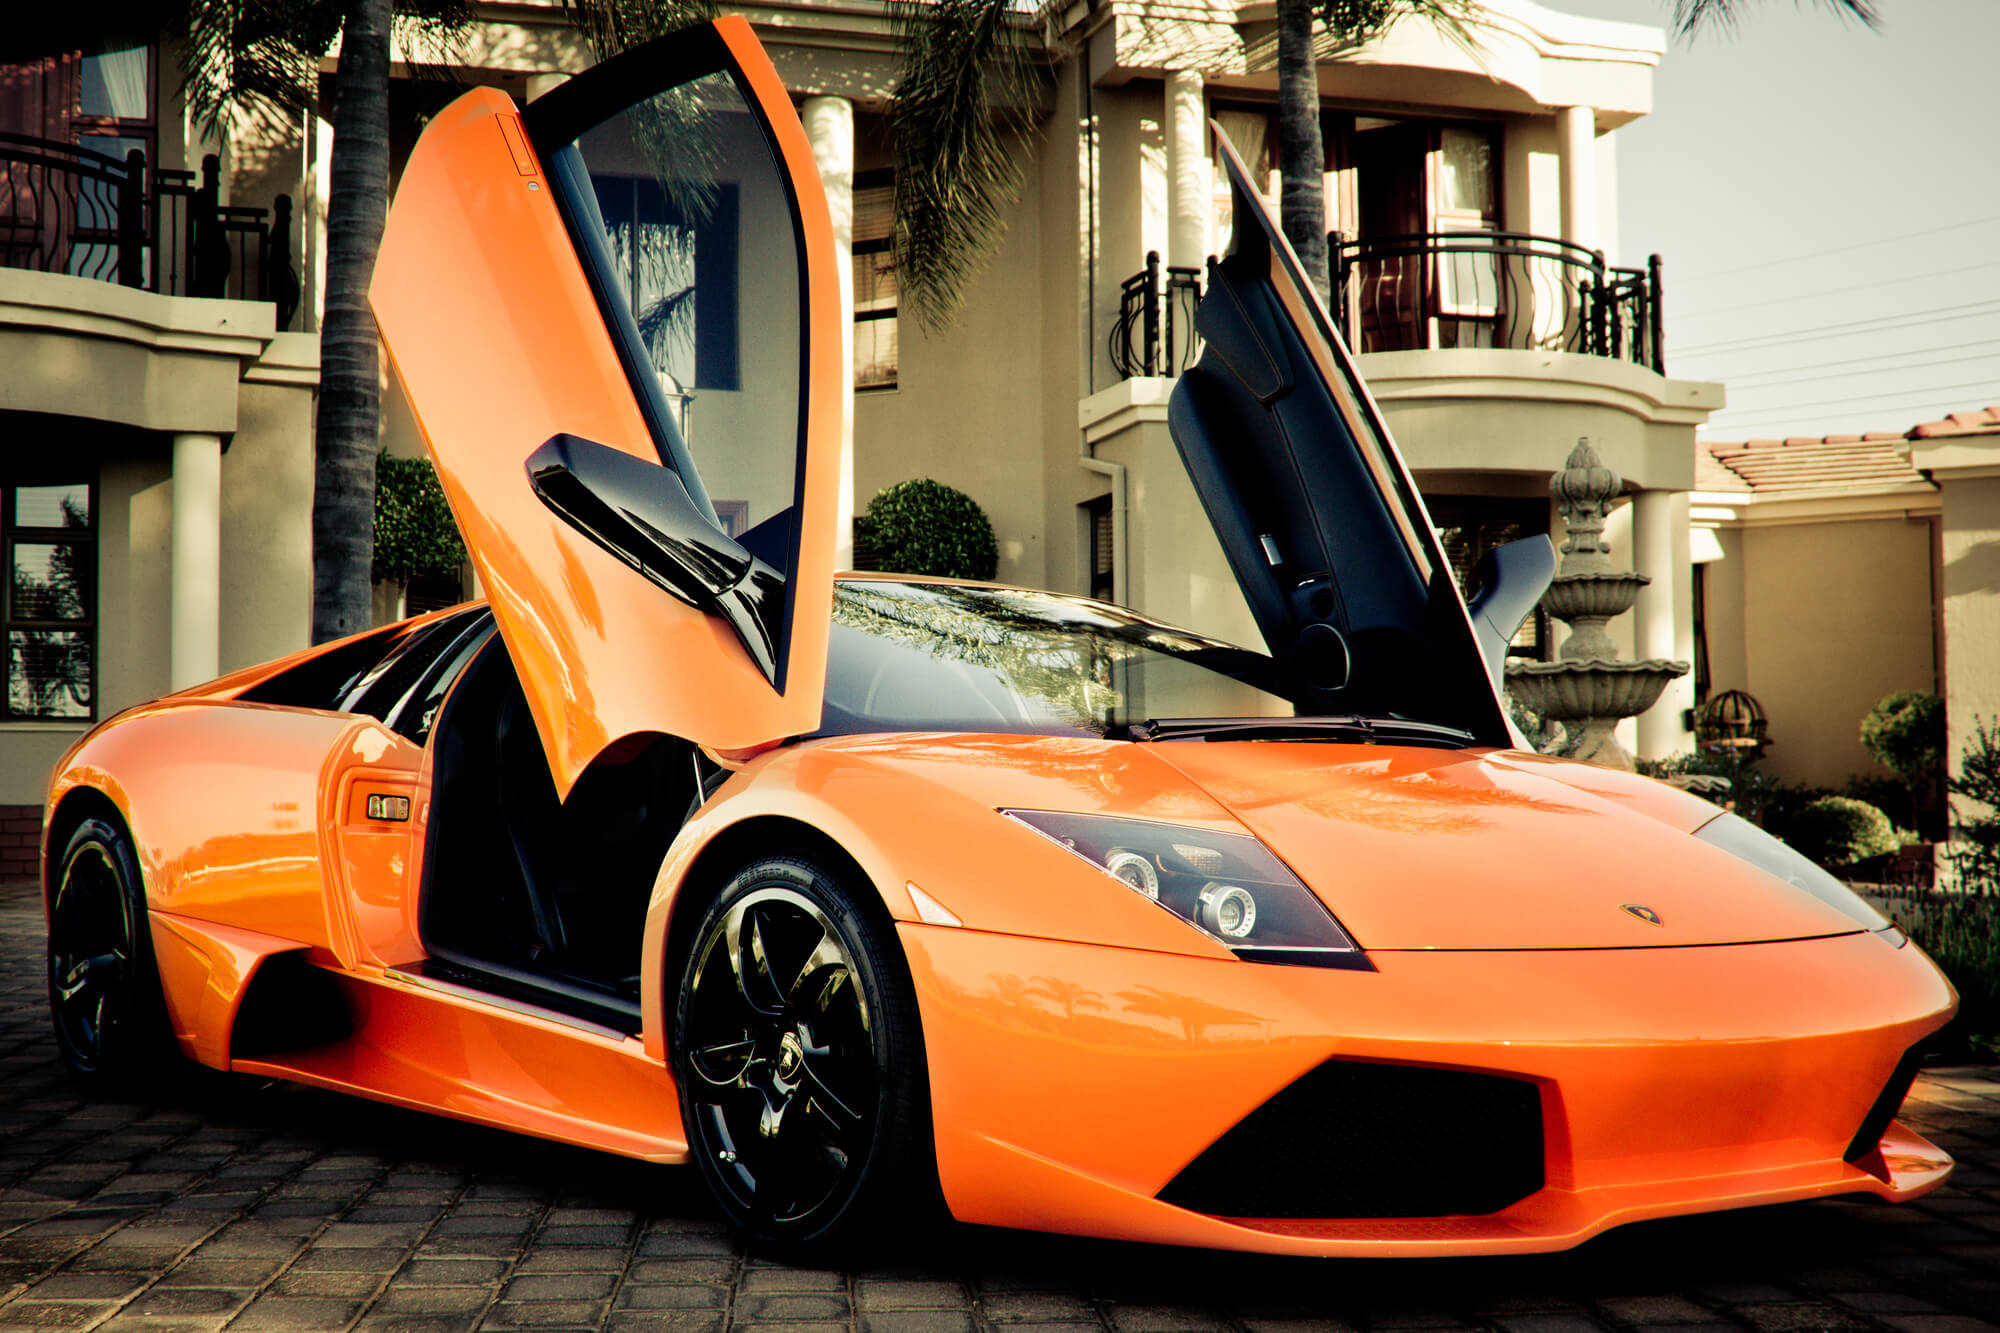 Lamborghini that should get a service in Davie FL